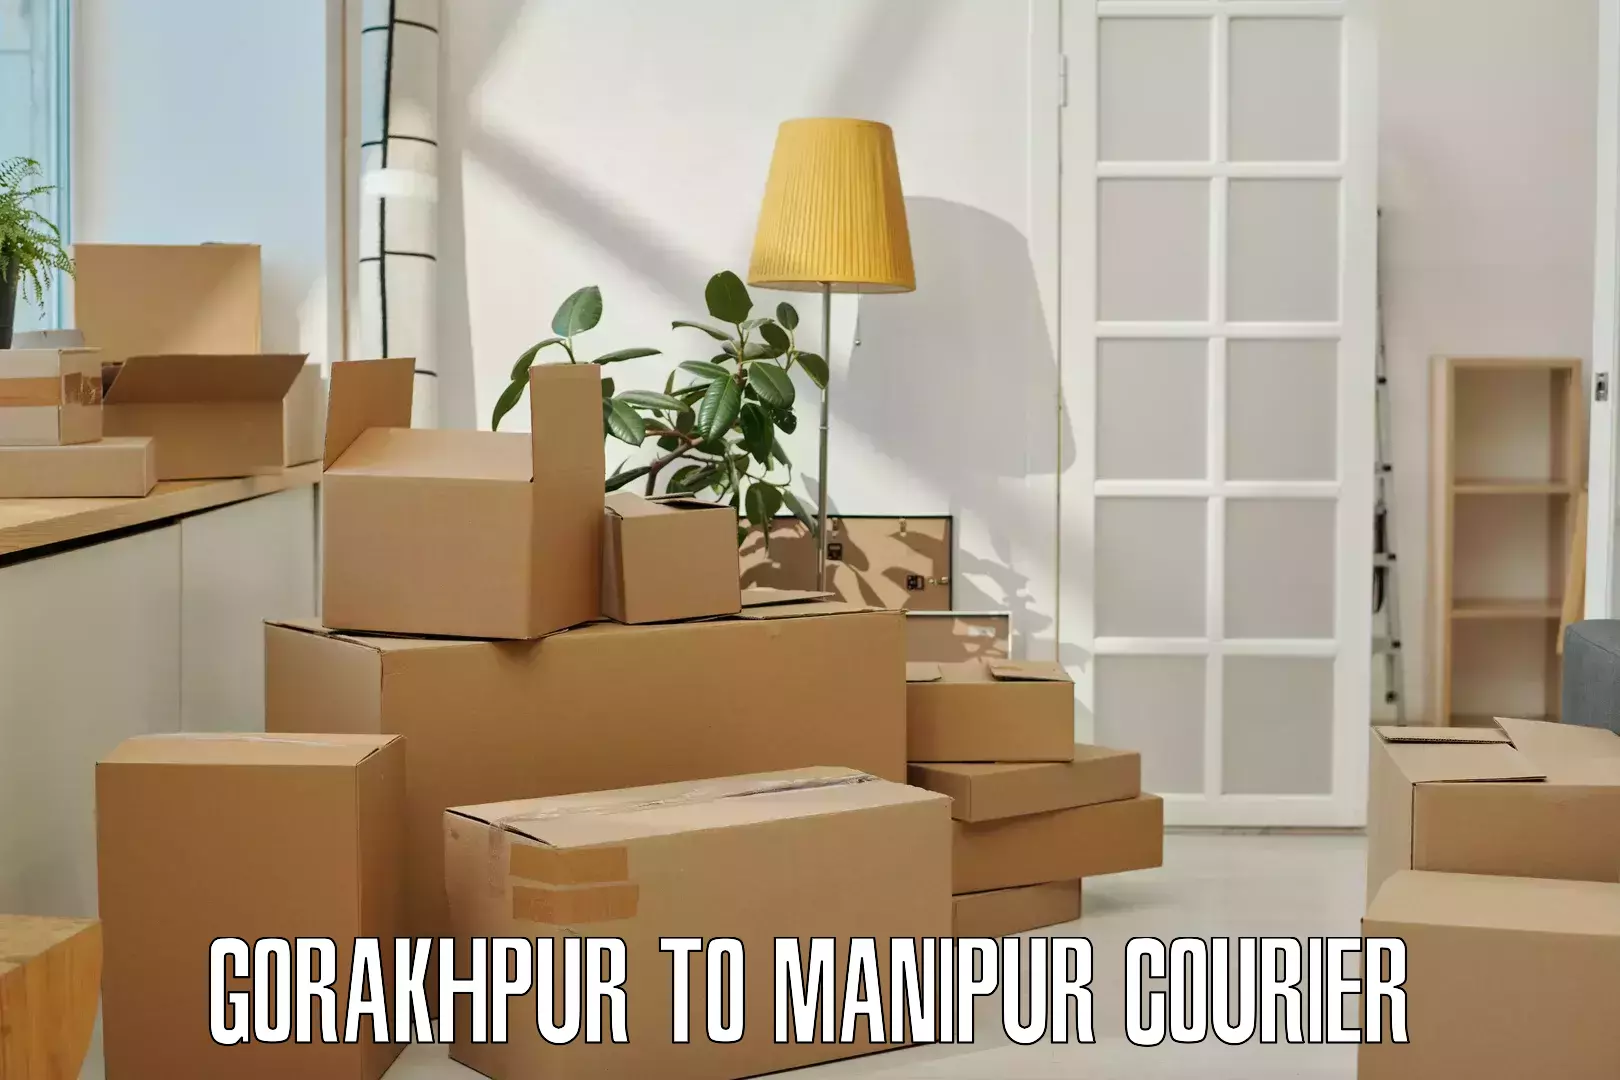 Bulk shipment in Gorakhpur to Moirang